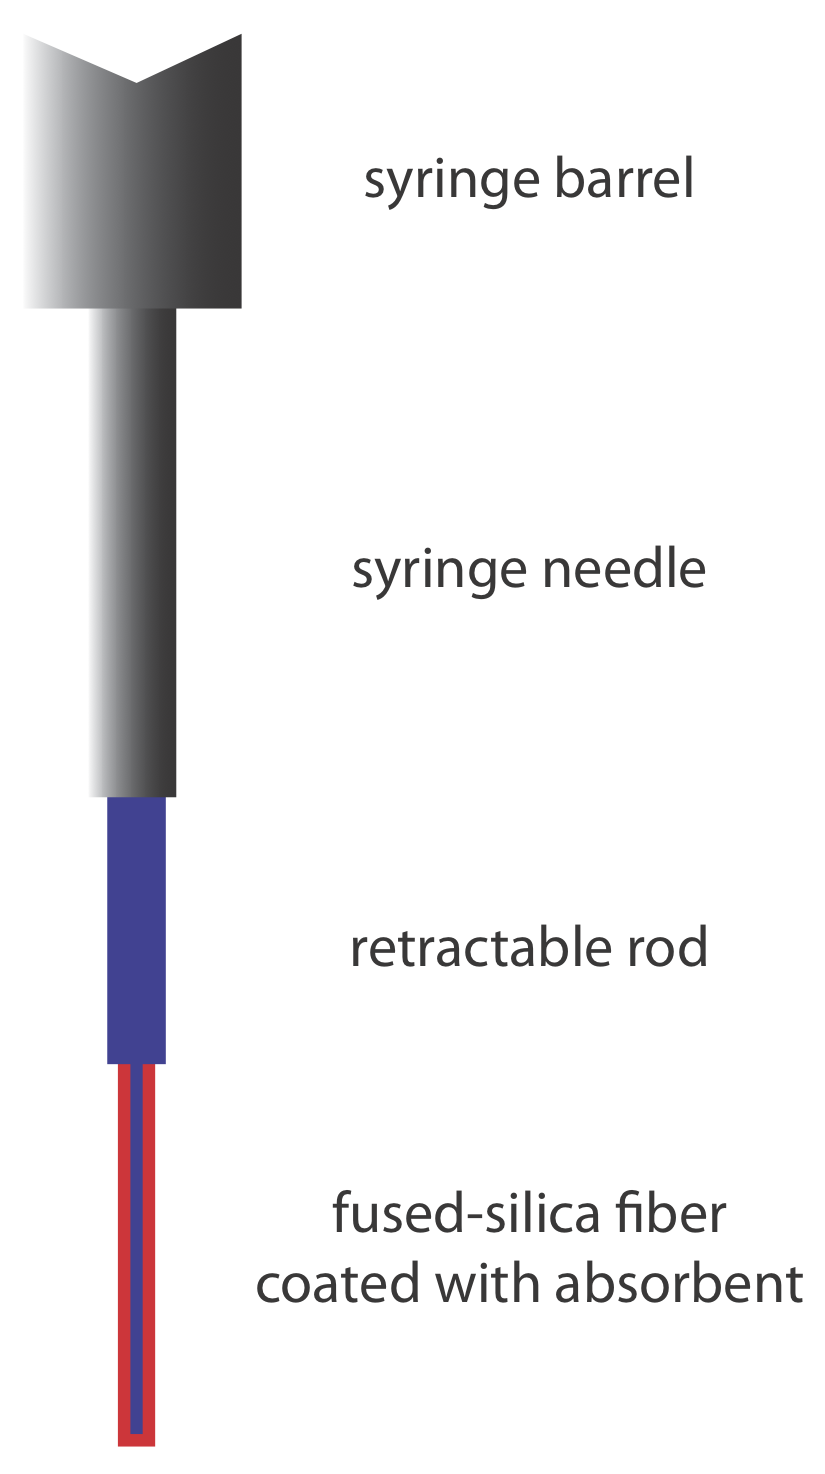 De arriba a abajo y cada nivel decreciente en diámetro, el diagrama muestra el barril de la jeringa, la aguja de la jeringa, la varilla retráctil y la fibra de sílice fundida recubierta con absorbente.